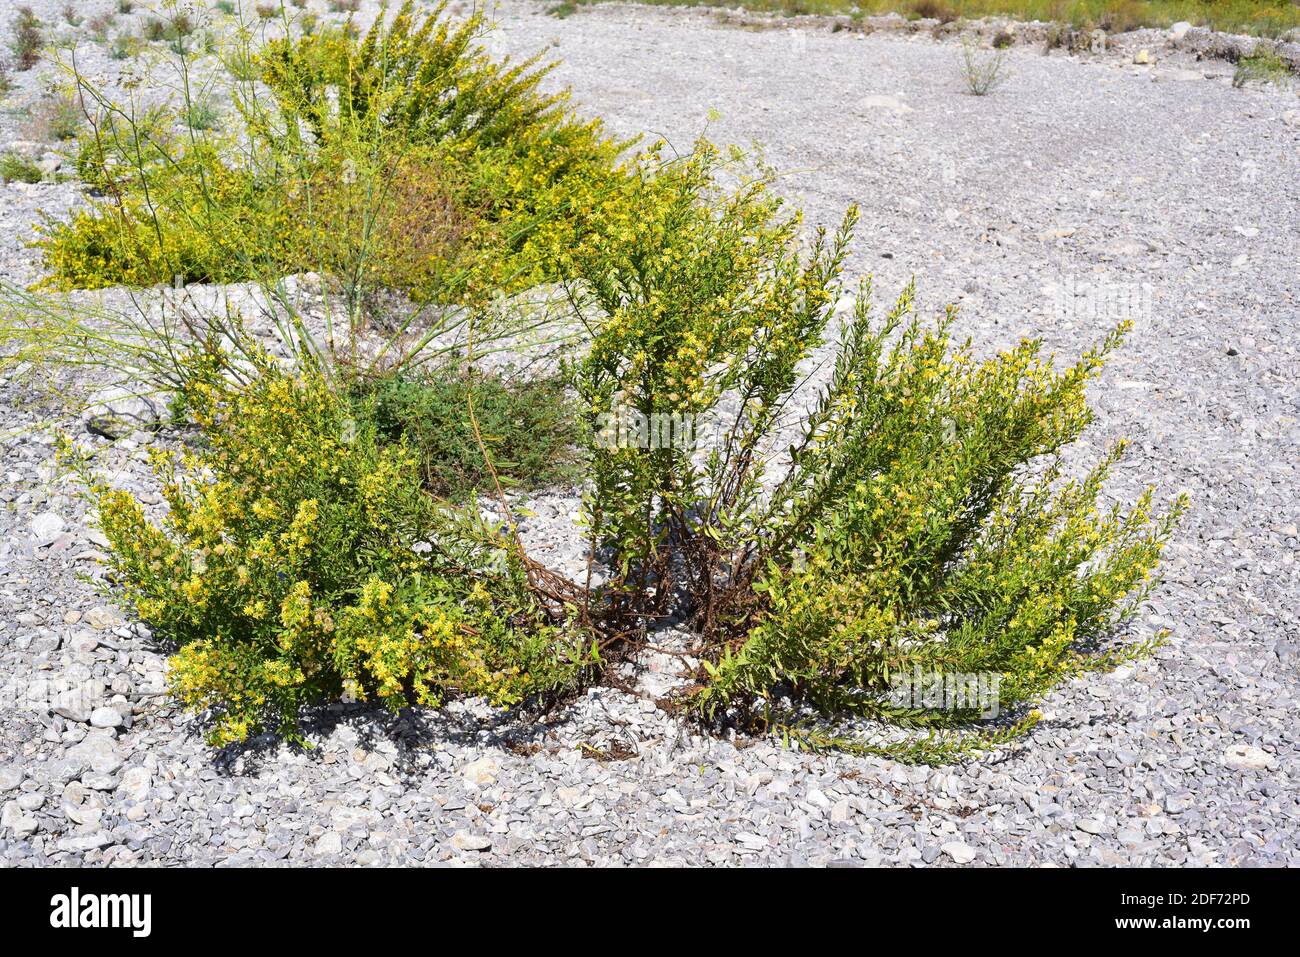 El falso yellowhead o el fleabano pegajoso (Dittrichia viscosa o Inula viscosa) es una planta perenne nativa de la cuenca mediterránea. Esta foto fue tomada Foto de stock